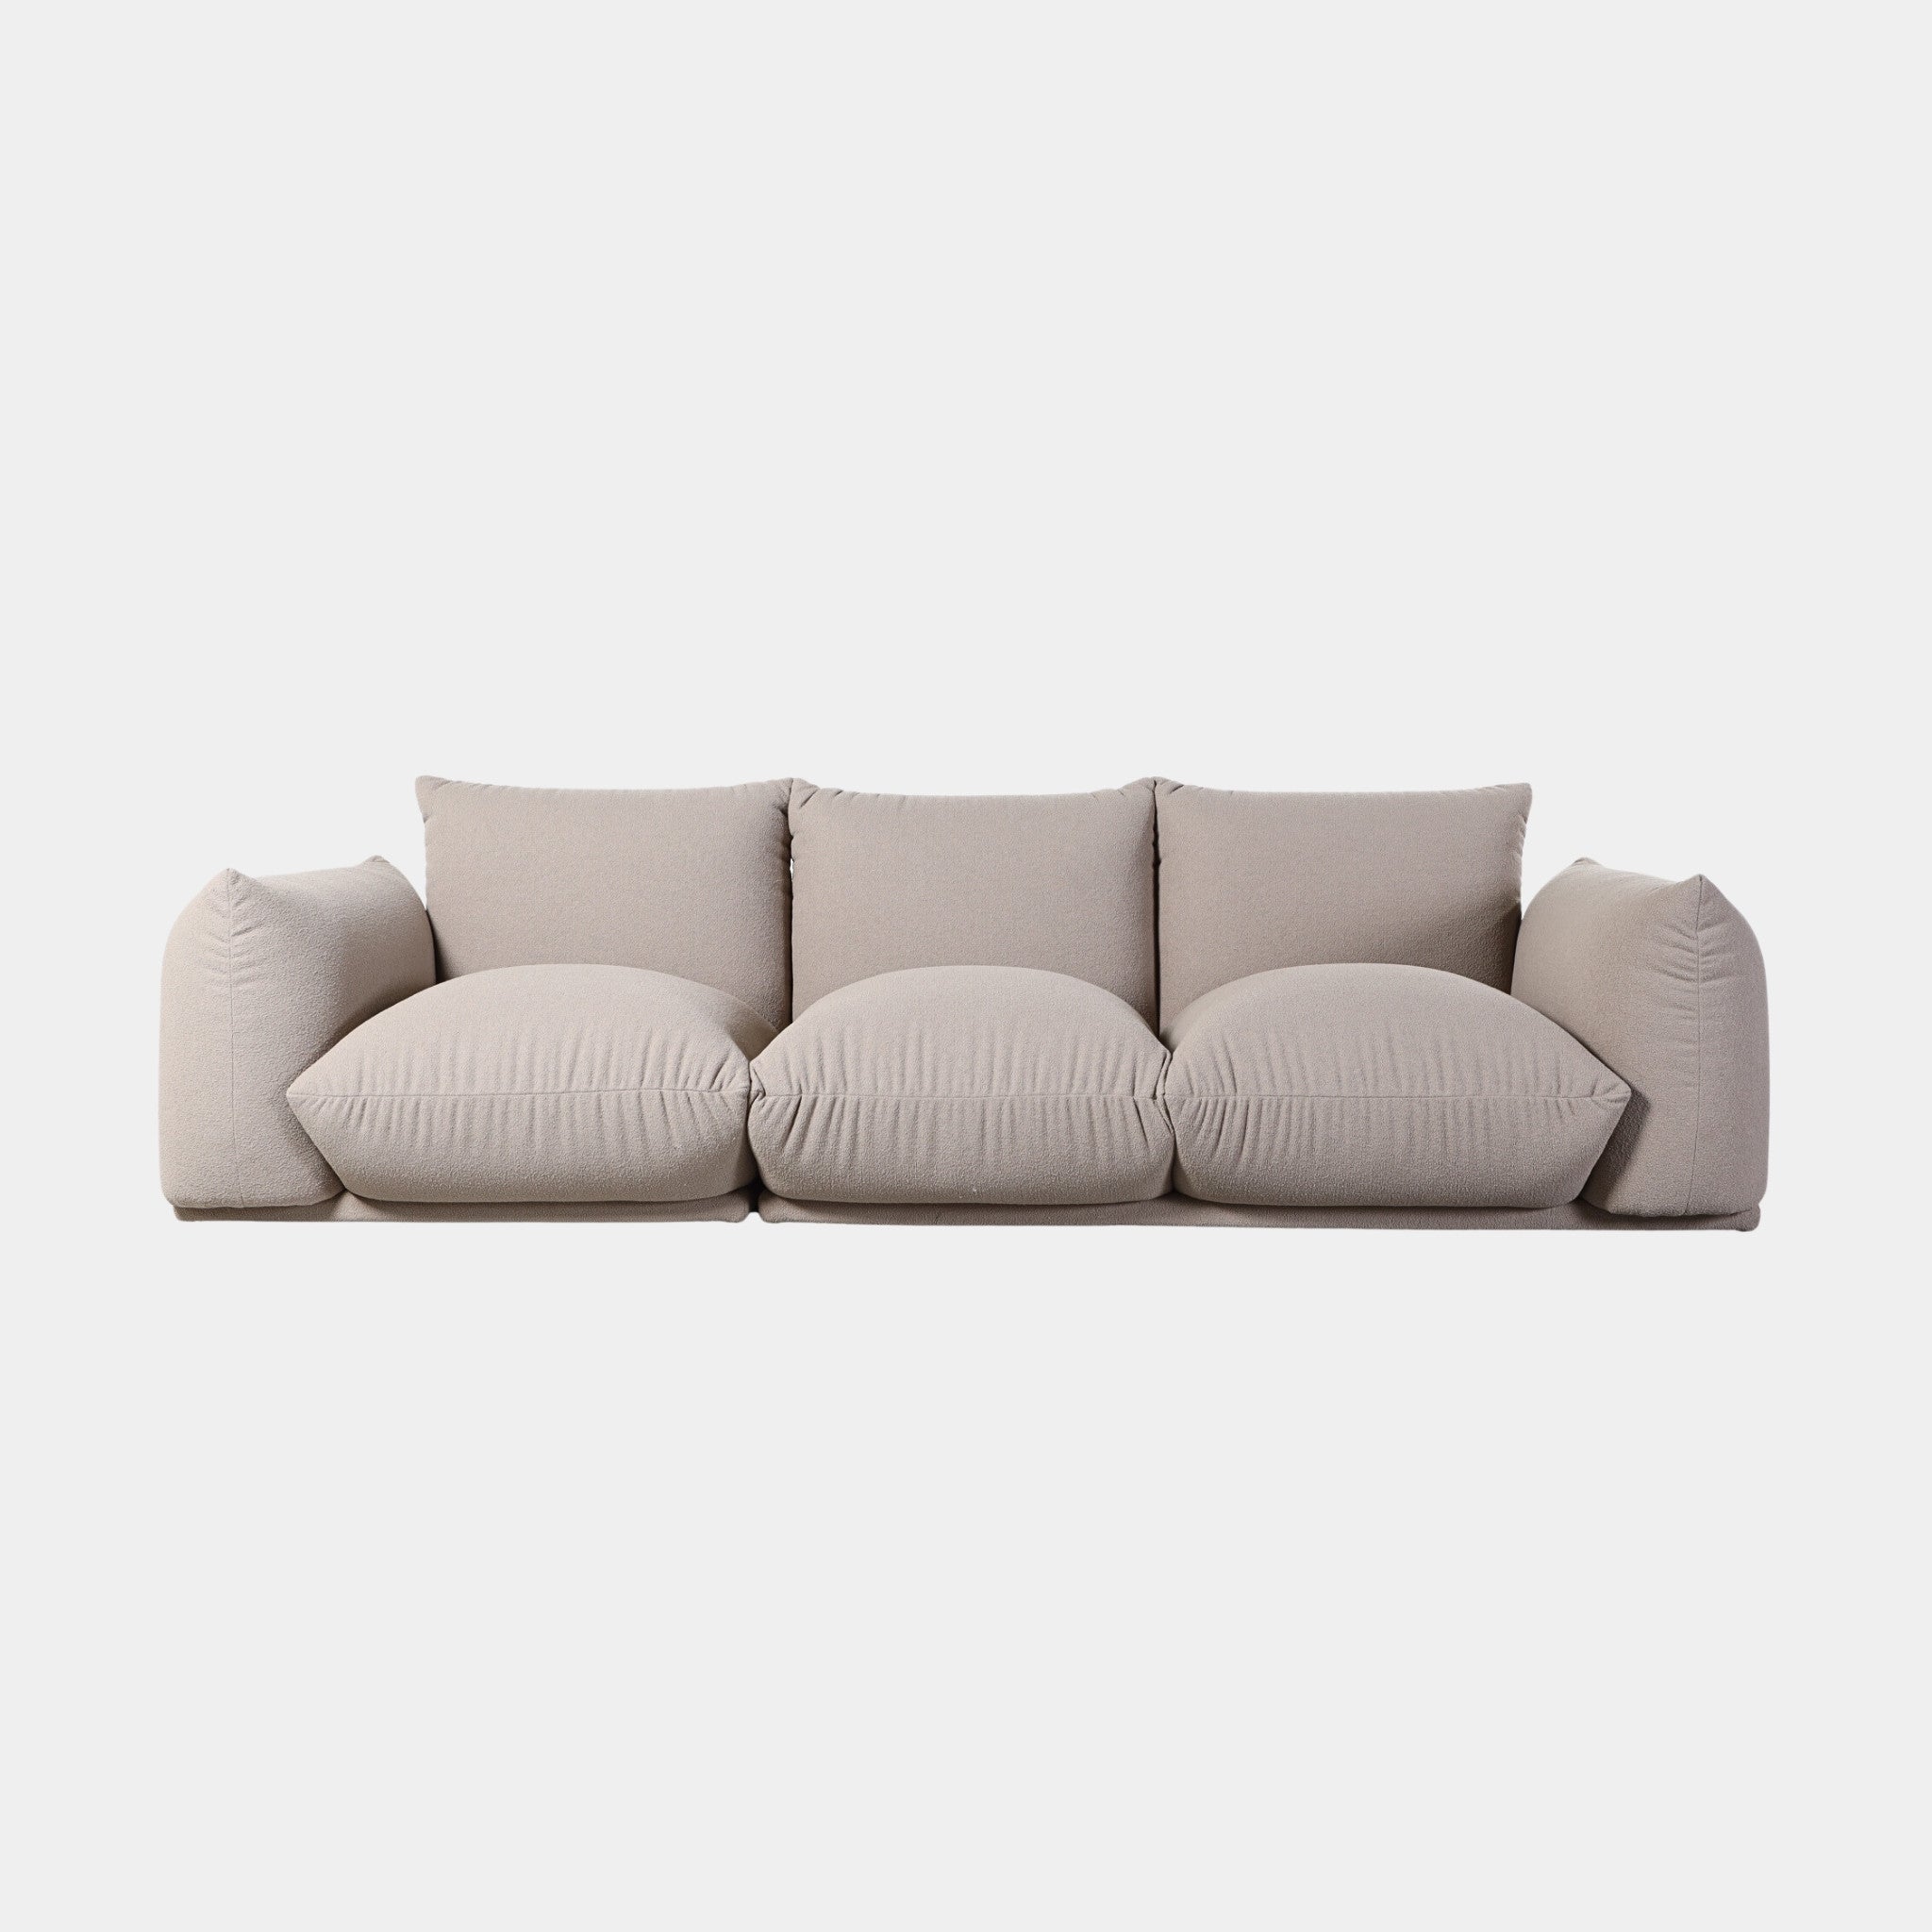 Loaf Modular Sofa - The Feelter